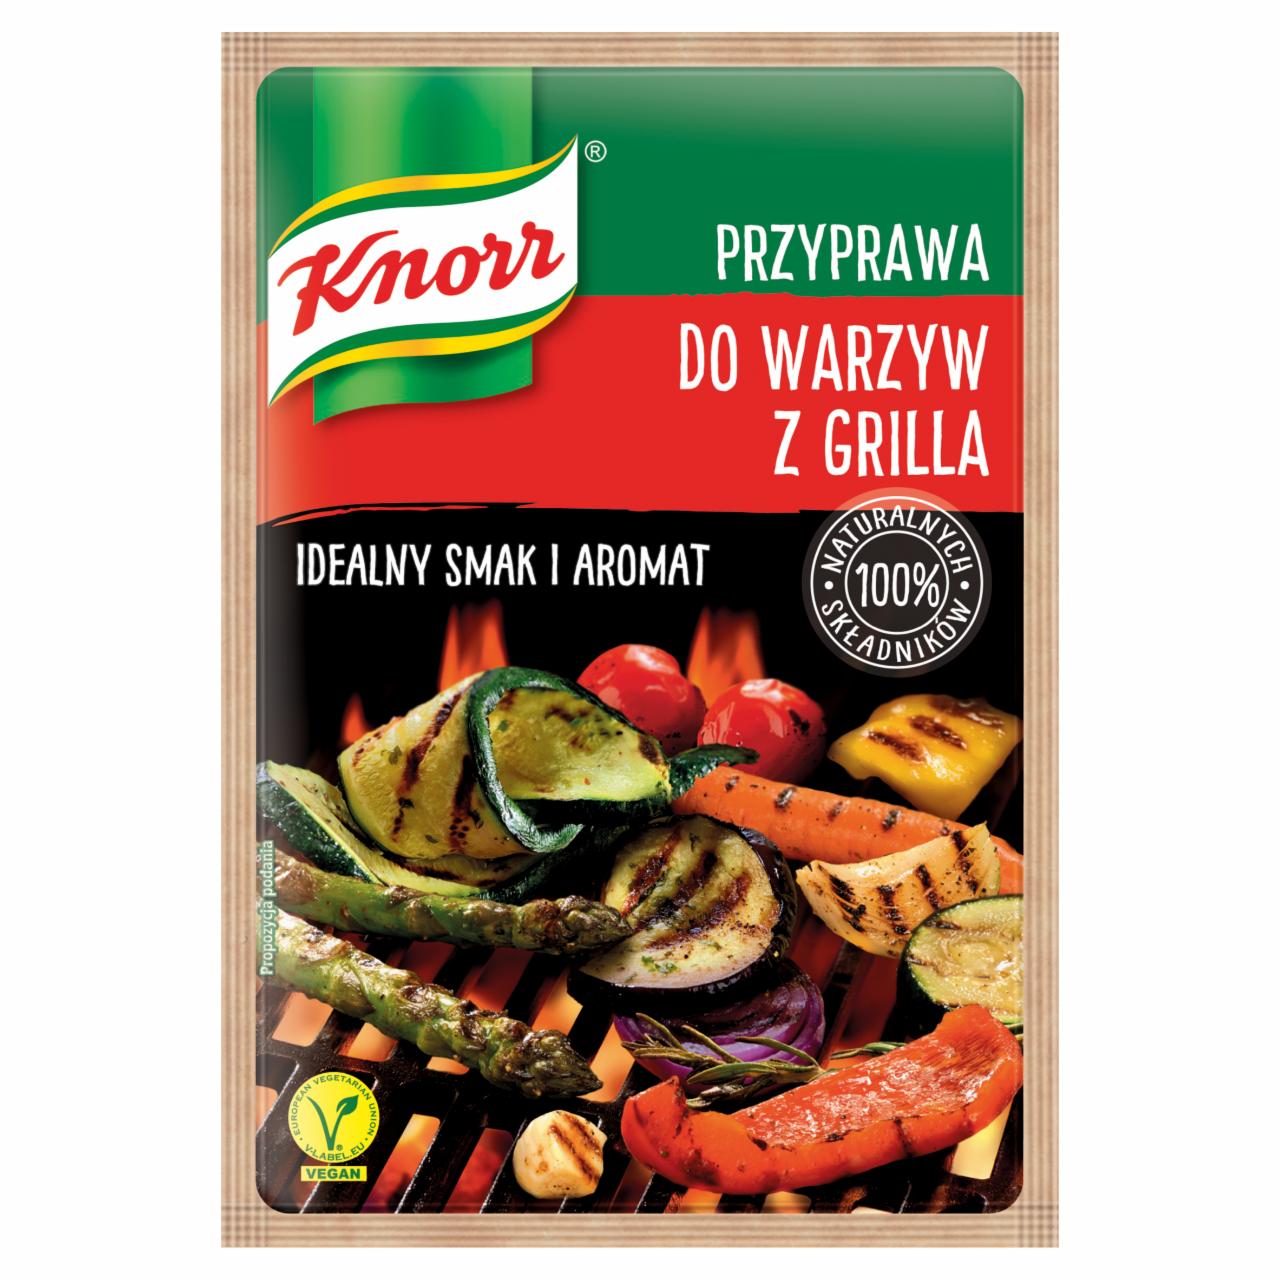 Zdjęcia - Knorr Przyprawa do warzyw z grilla 23 g